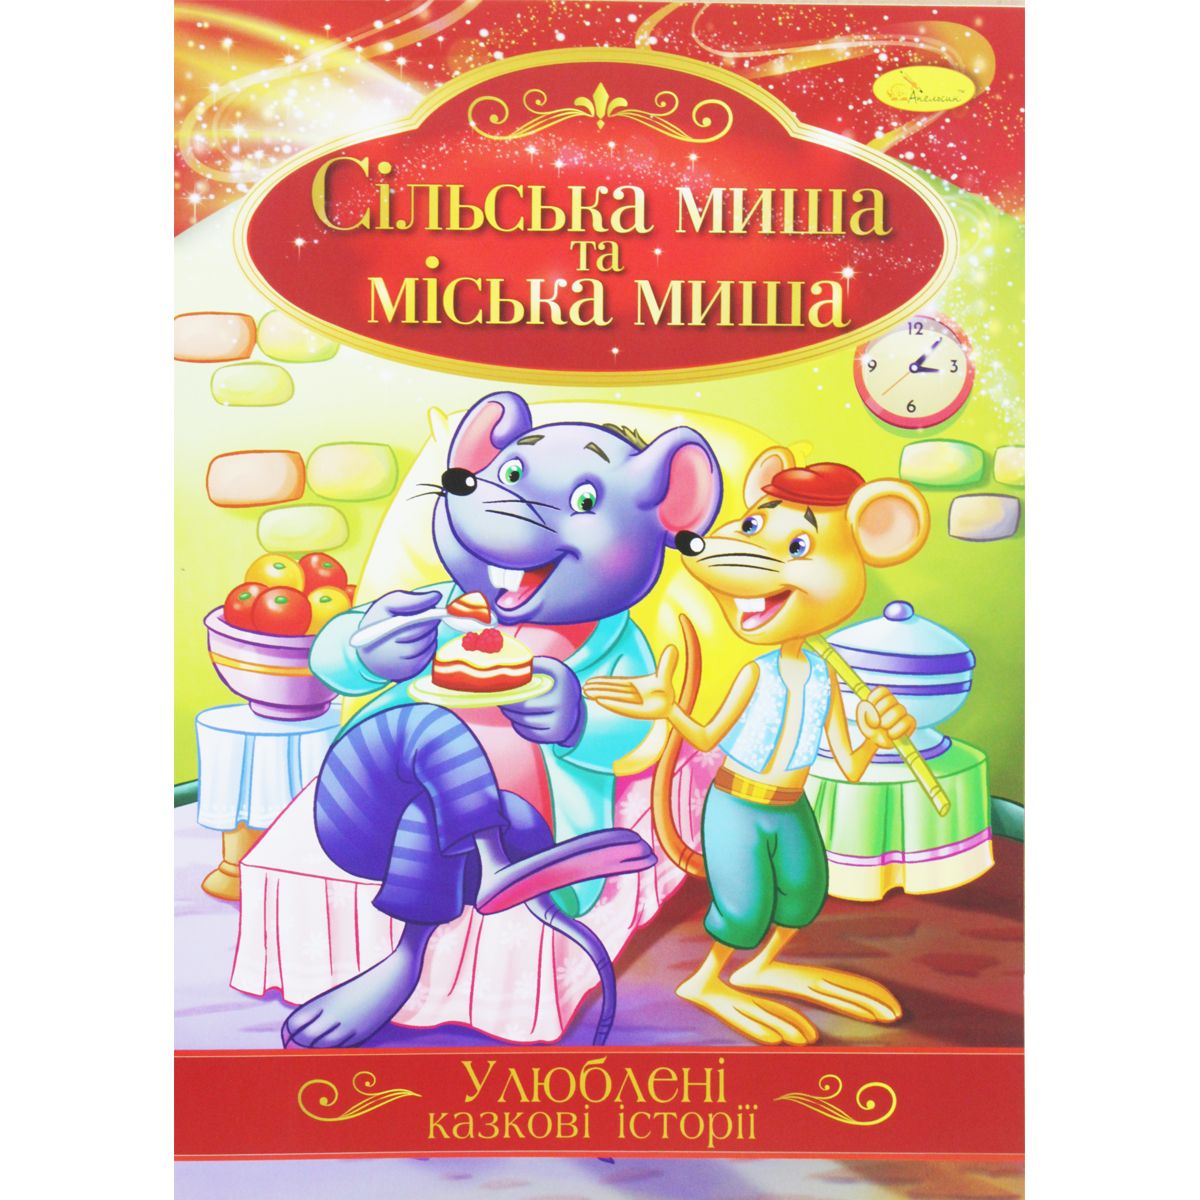 Книжка "Улюблені казкові історії: Сільська і міська миша" (укр)